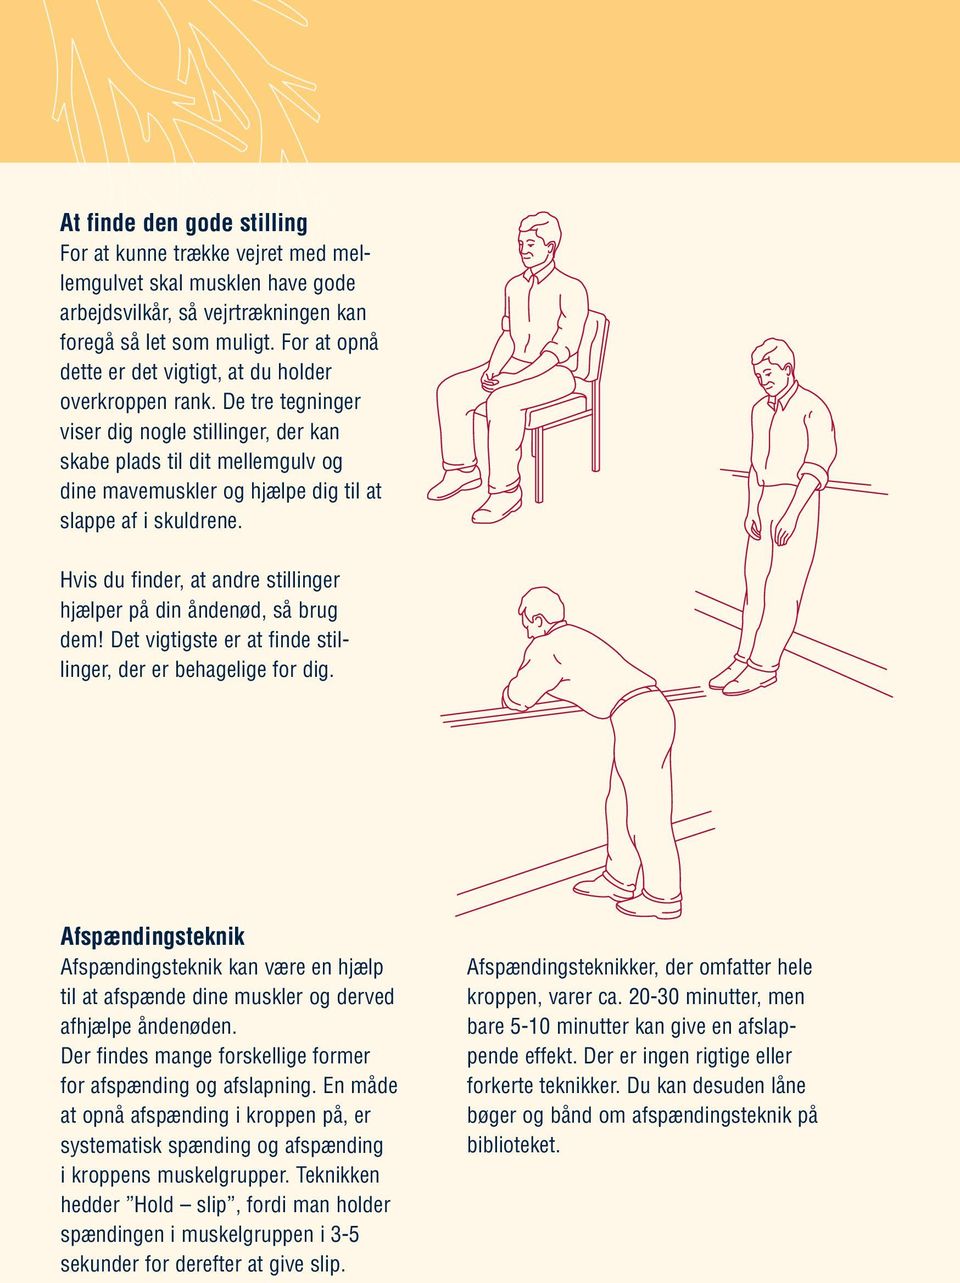 De tre tegninger viser dig nogle stillinger, der kan skabe plads til dit mellemgulv og dine mavemuskler og hjælpe dig til at slappe af i skuldrene.